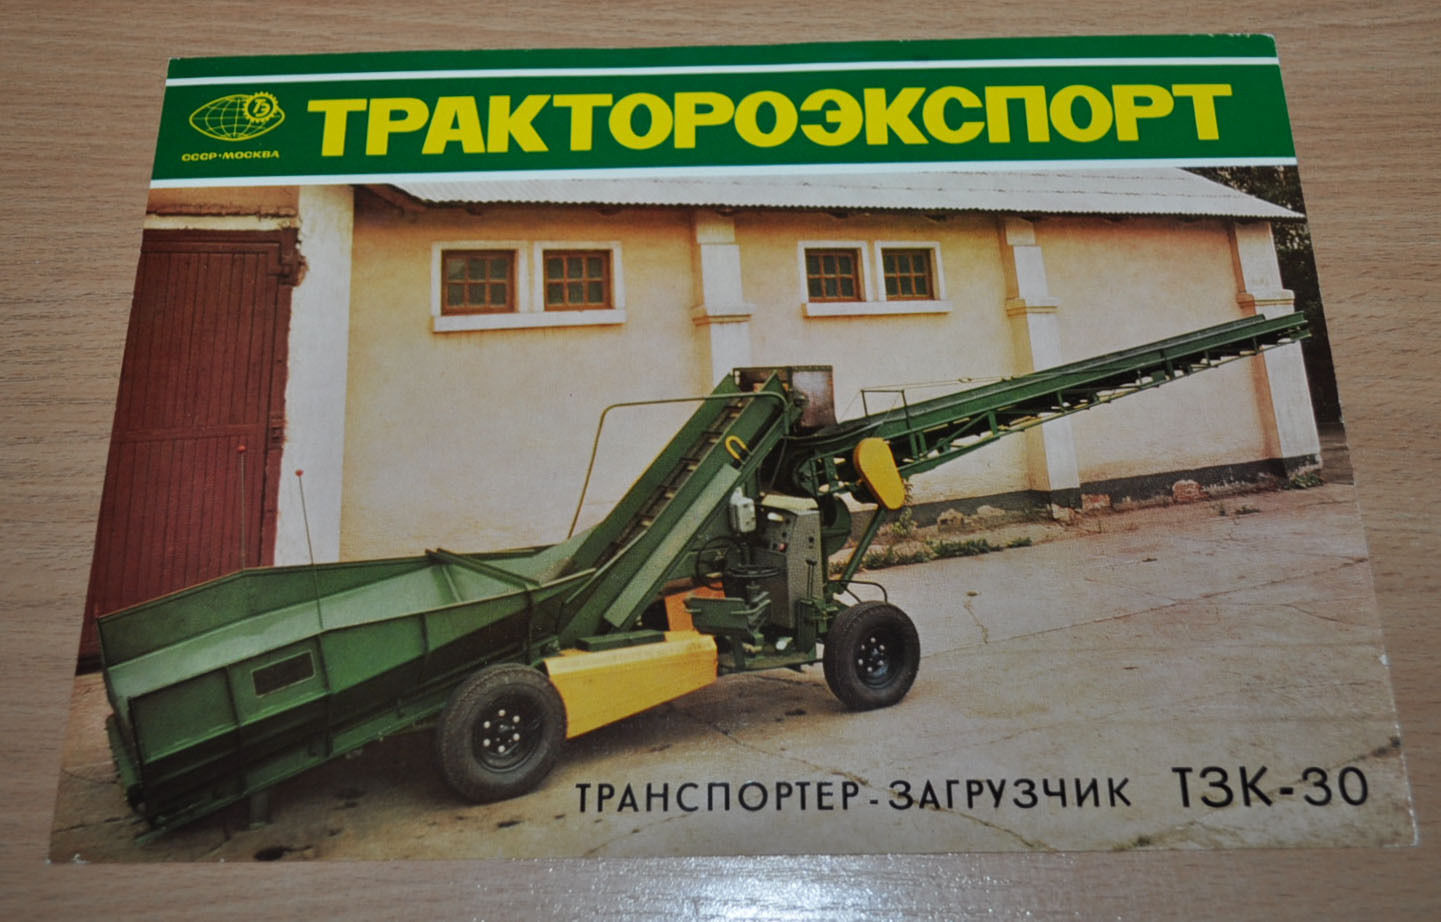 Tractoroexport Potato conveyor loader TZK-30 Russian Brochure Prospekt